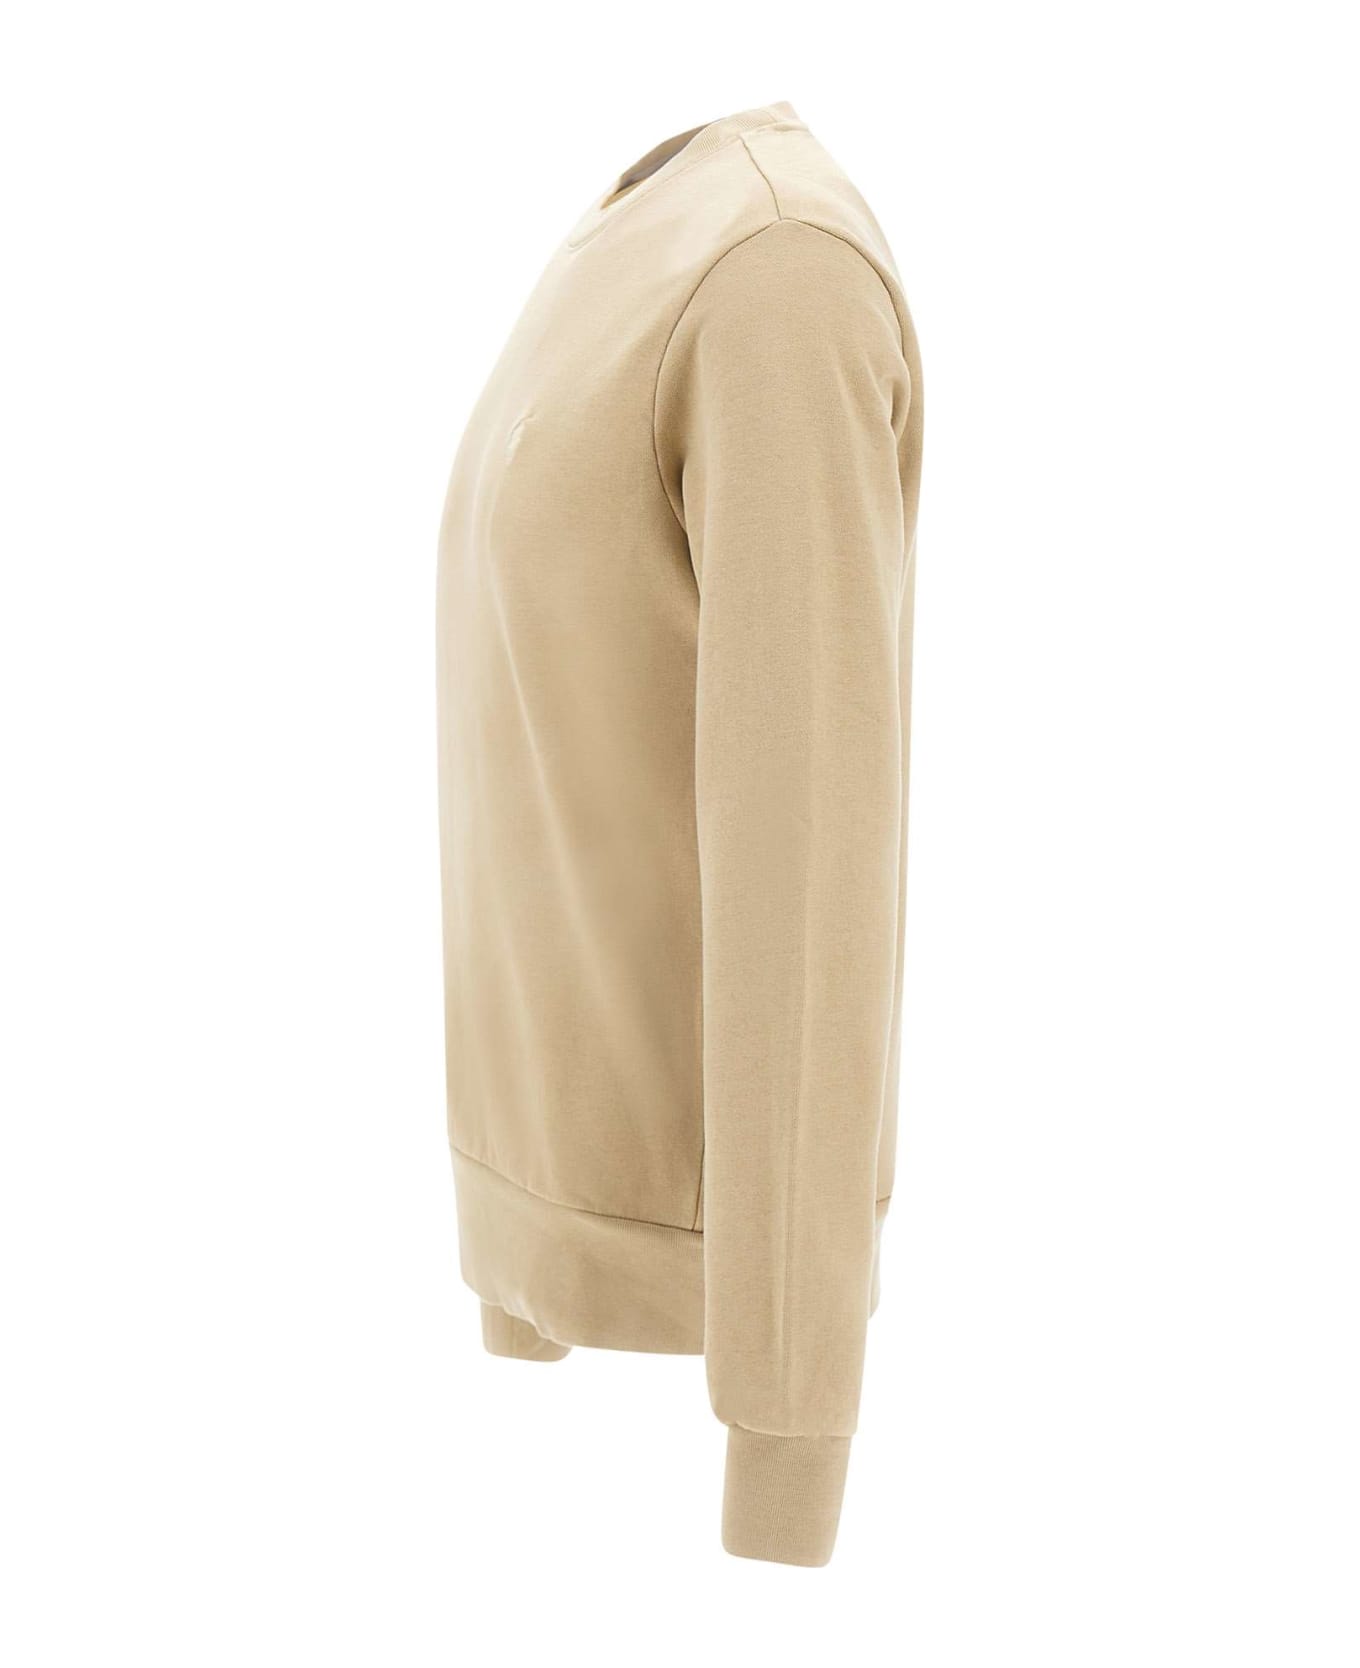 Polo Ralph Lauren "classics" Cotton Sweatshirt - BEIGE